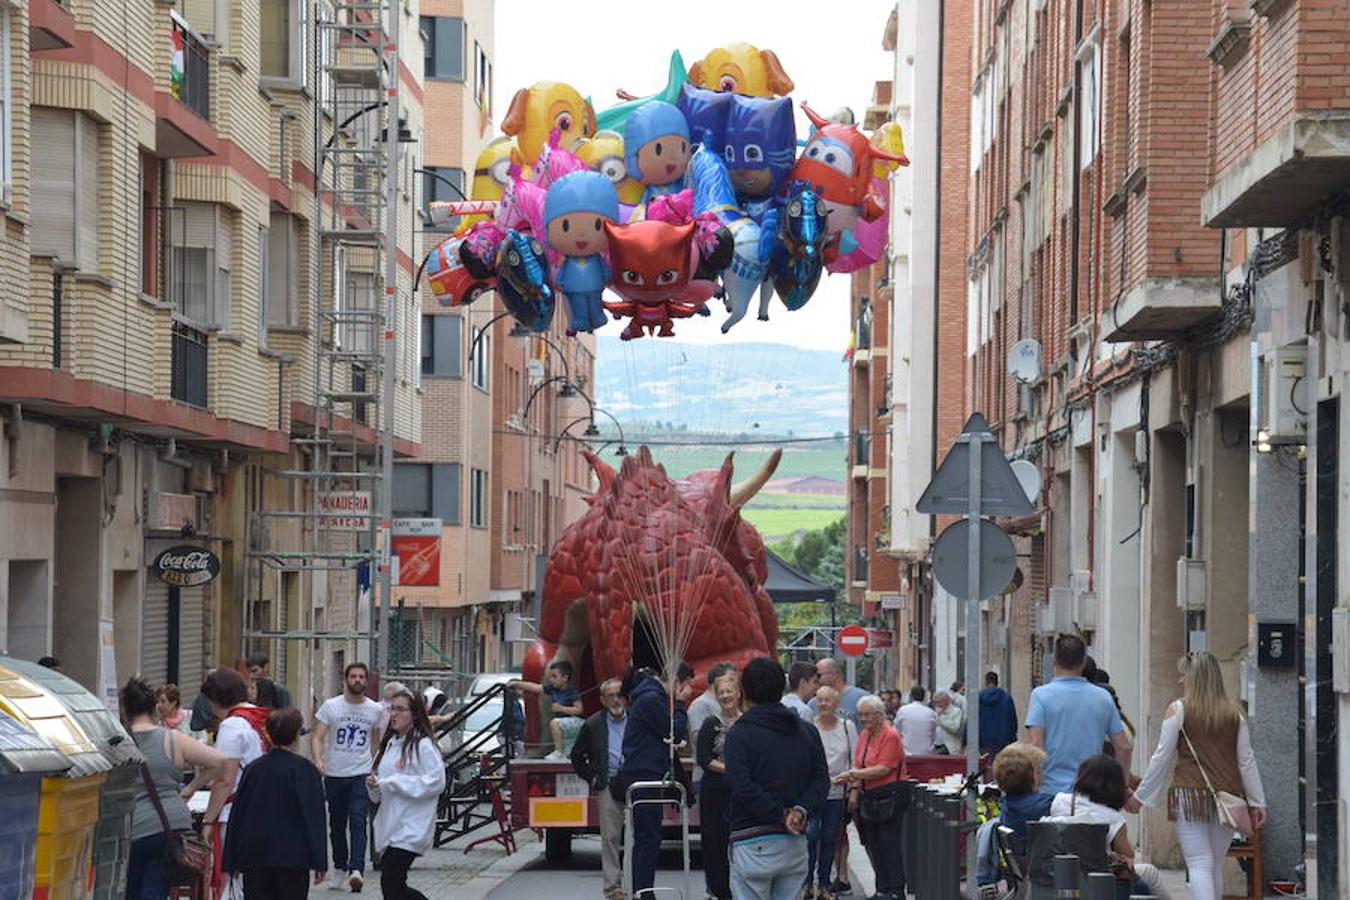 Fiesta solidaria con hinchables y dragón tragantúa celebrada en la calle Beratúa organizada por la Peña la Simpatía y la Federación de Peñas de Logroño.